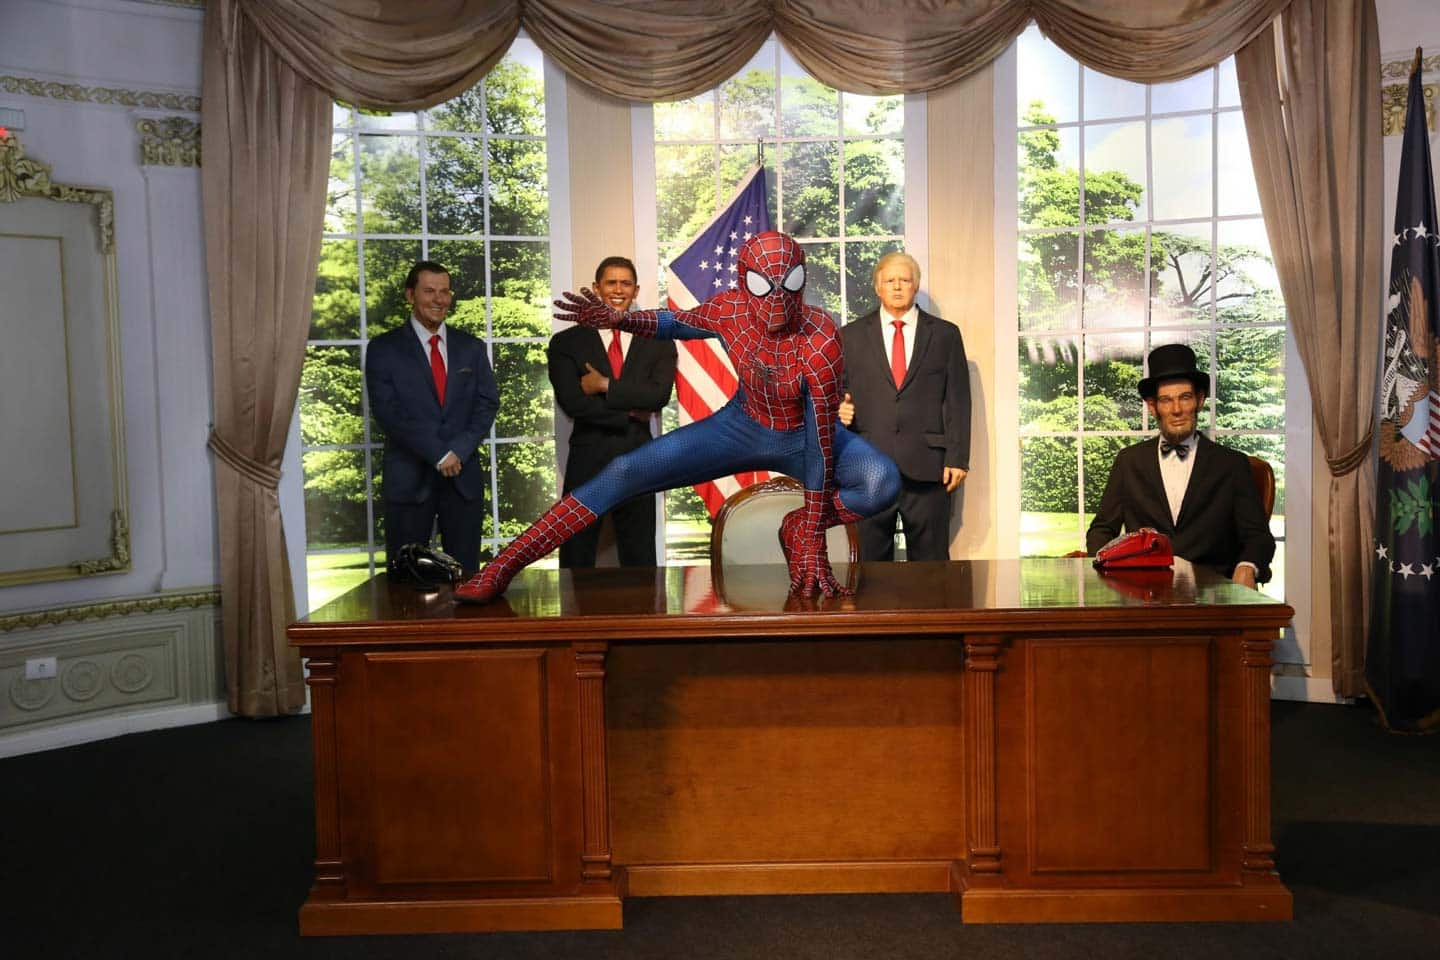 Homem Aranha e presidentes americanos em réplica da casa branca no Dreamland Foz do Iguaçu